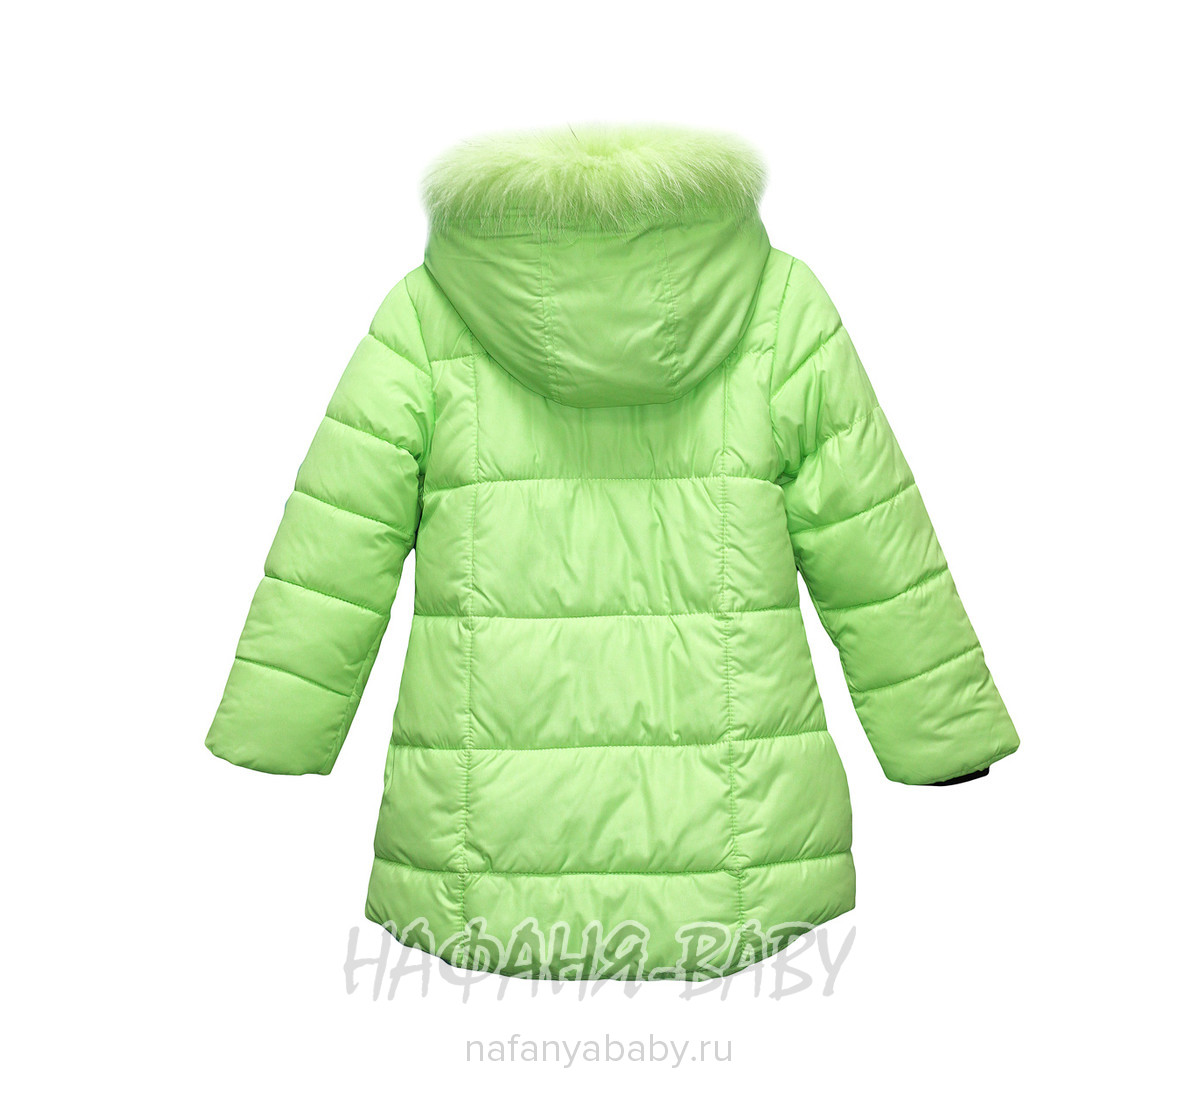 Детская зимняя куртка YINIO, купить в интернет магазине Нафаня. арт: 1802.